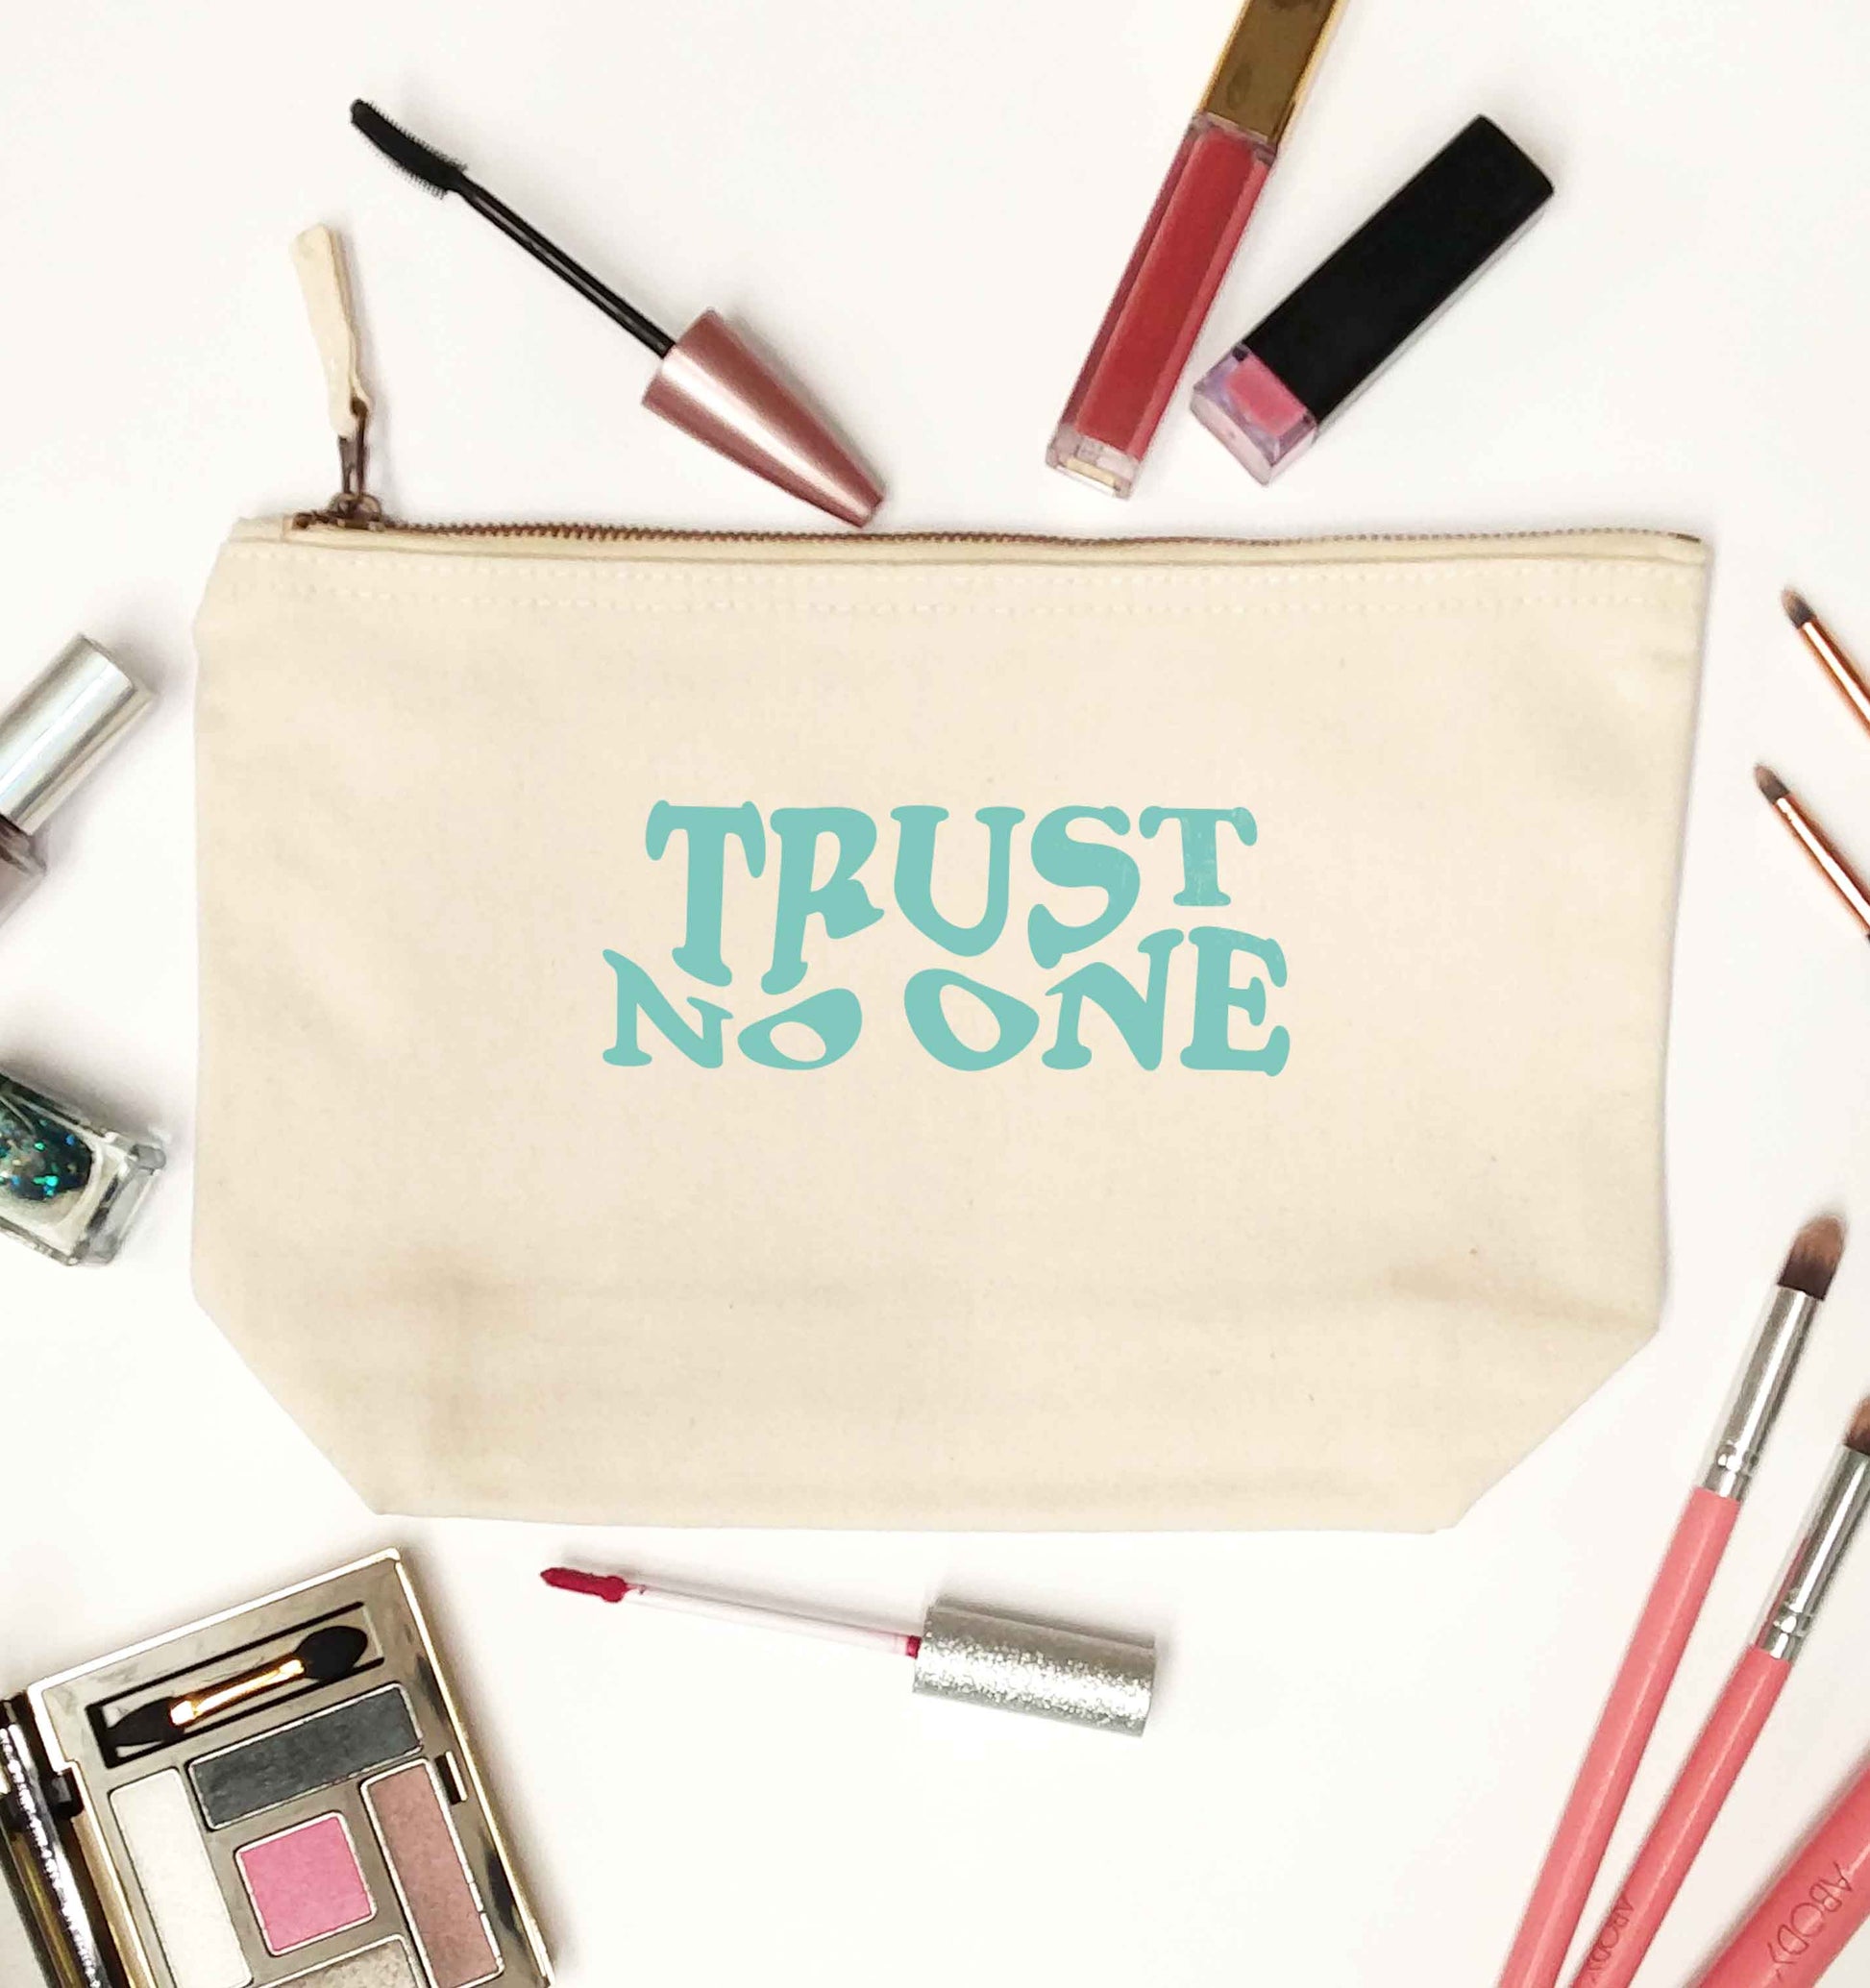 Trust no one natural makeup bag